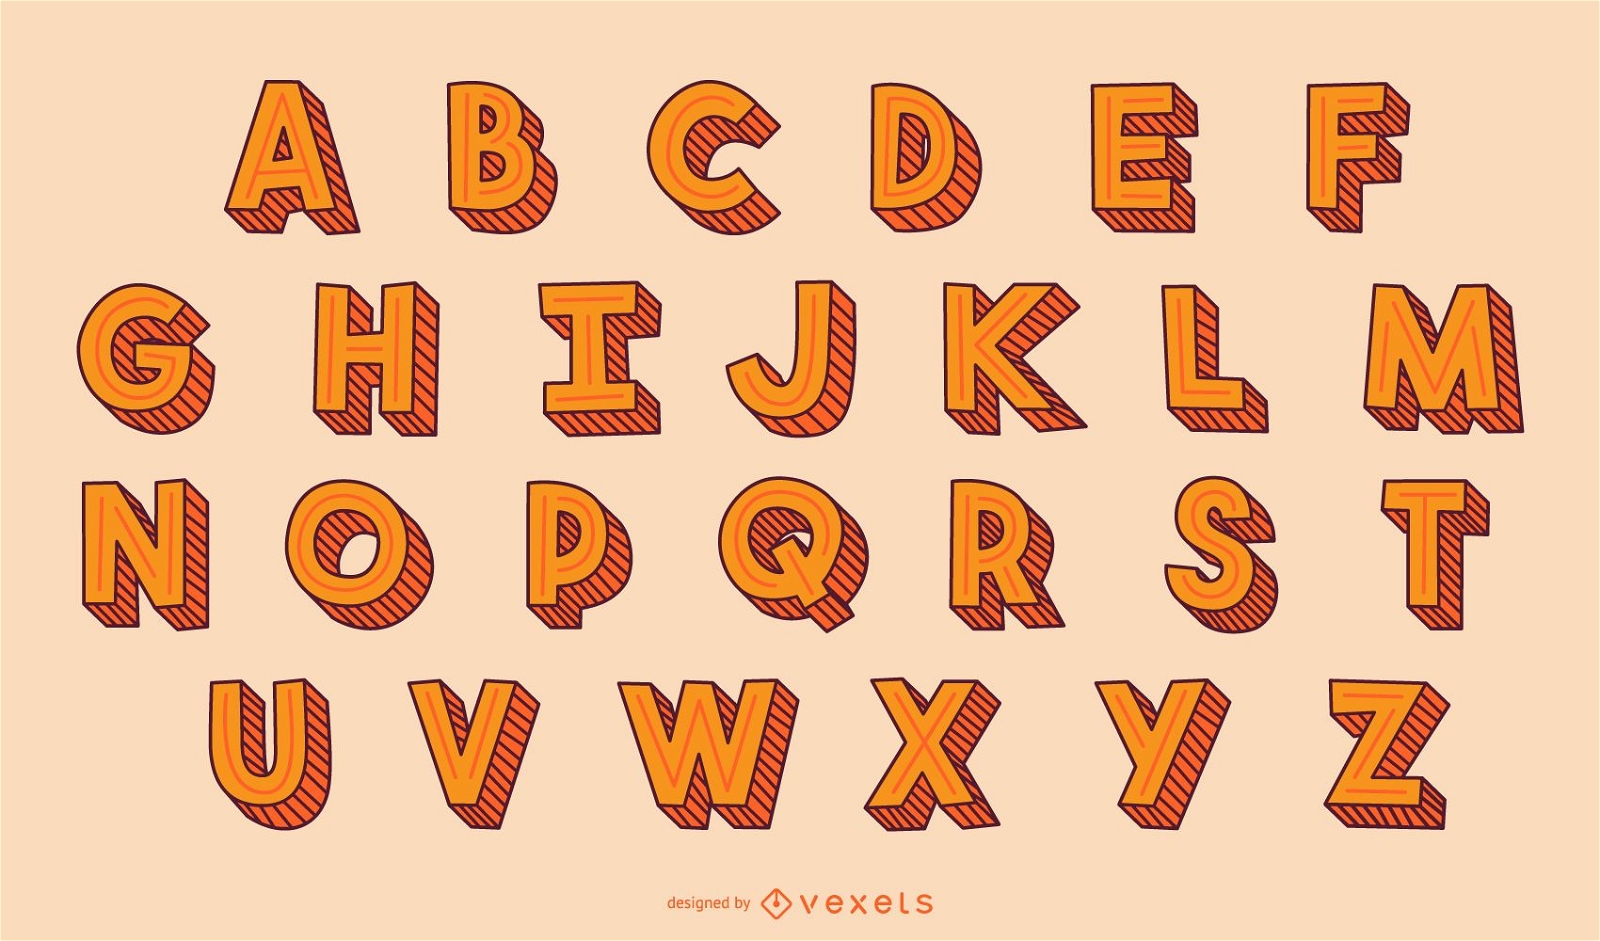 Letras Do Alfabeto Em 3d - MODISEDU